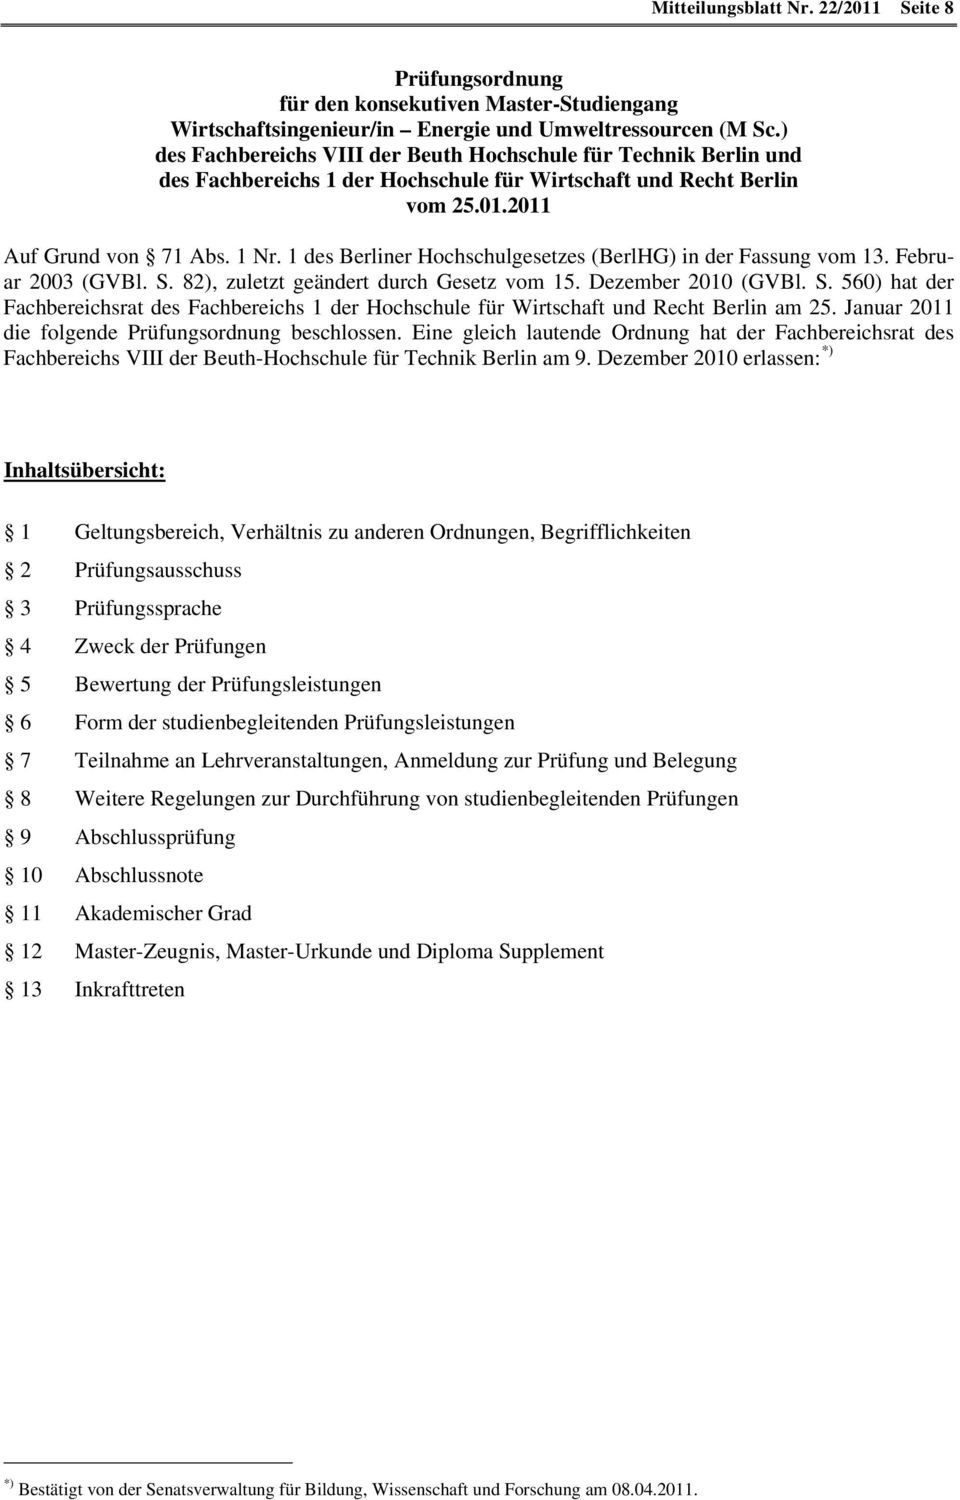 1 des Berliner Hochschulgesetzes (BerlHG) in der Fassung vom 13. Februar 2003 (GVBl. S. 82), zuletzt geändert durch Gesetz vom 15. Dezember 2010 (GVBl. S. 560) hat der Fachbereichsrat des Fachbereichs 1 der Hochschule für Wirtschaft und Recht Berlin am 25.